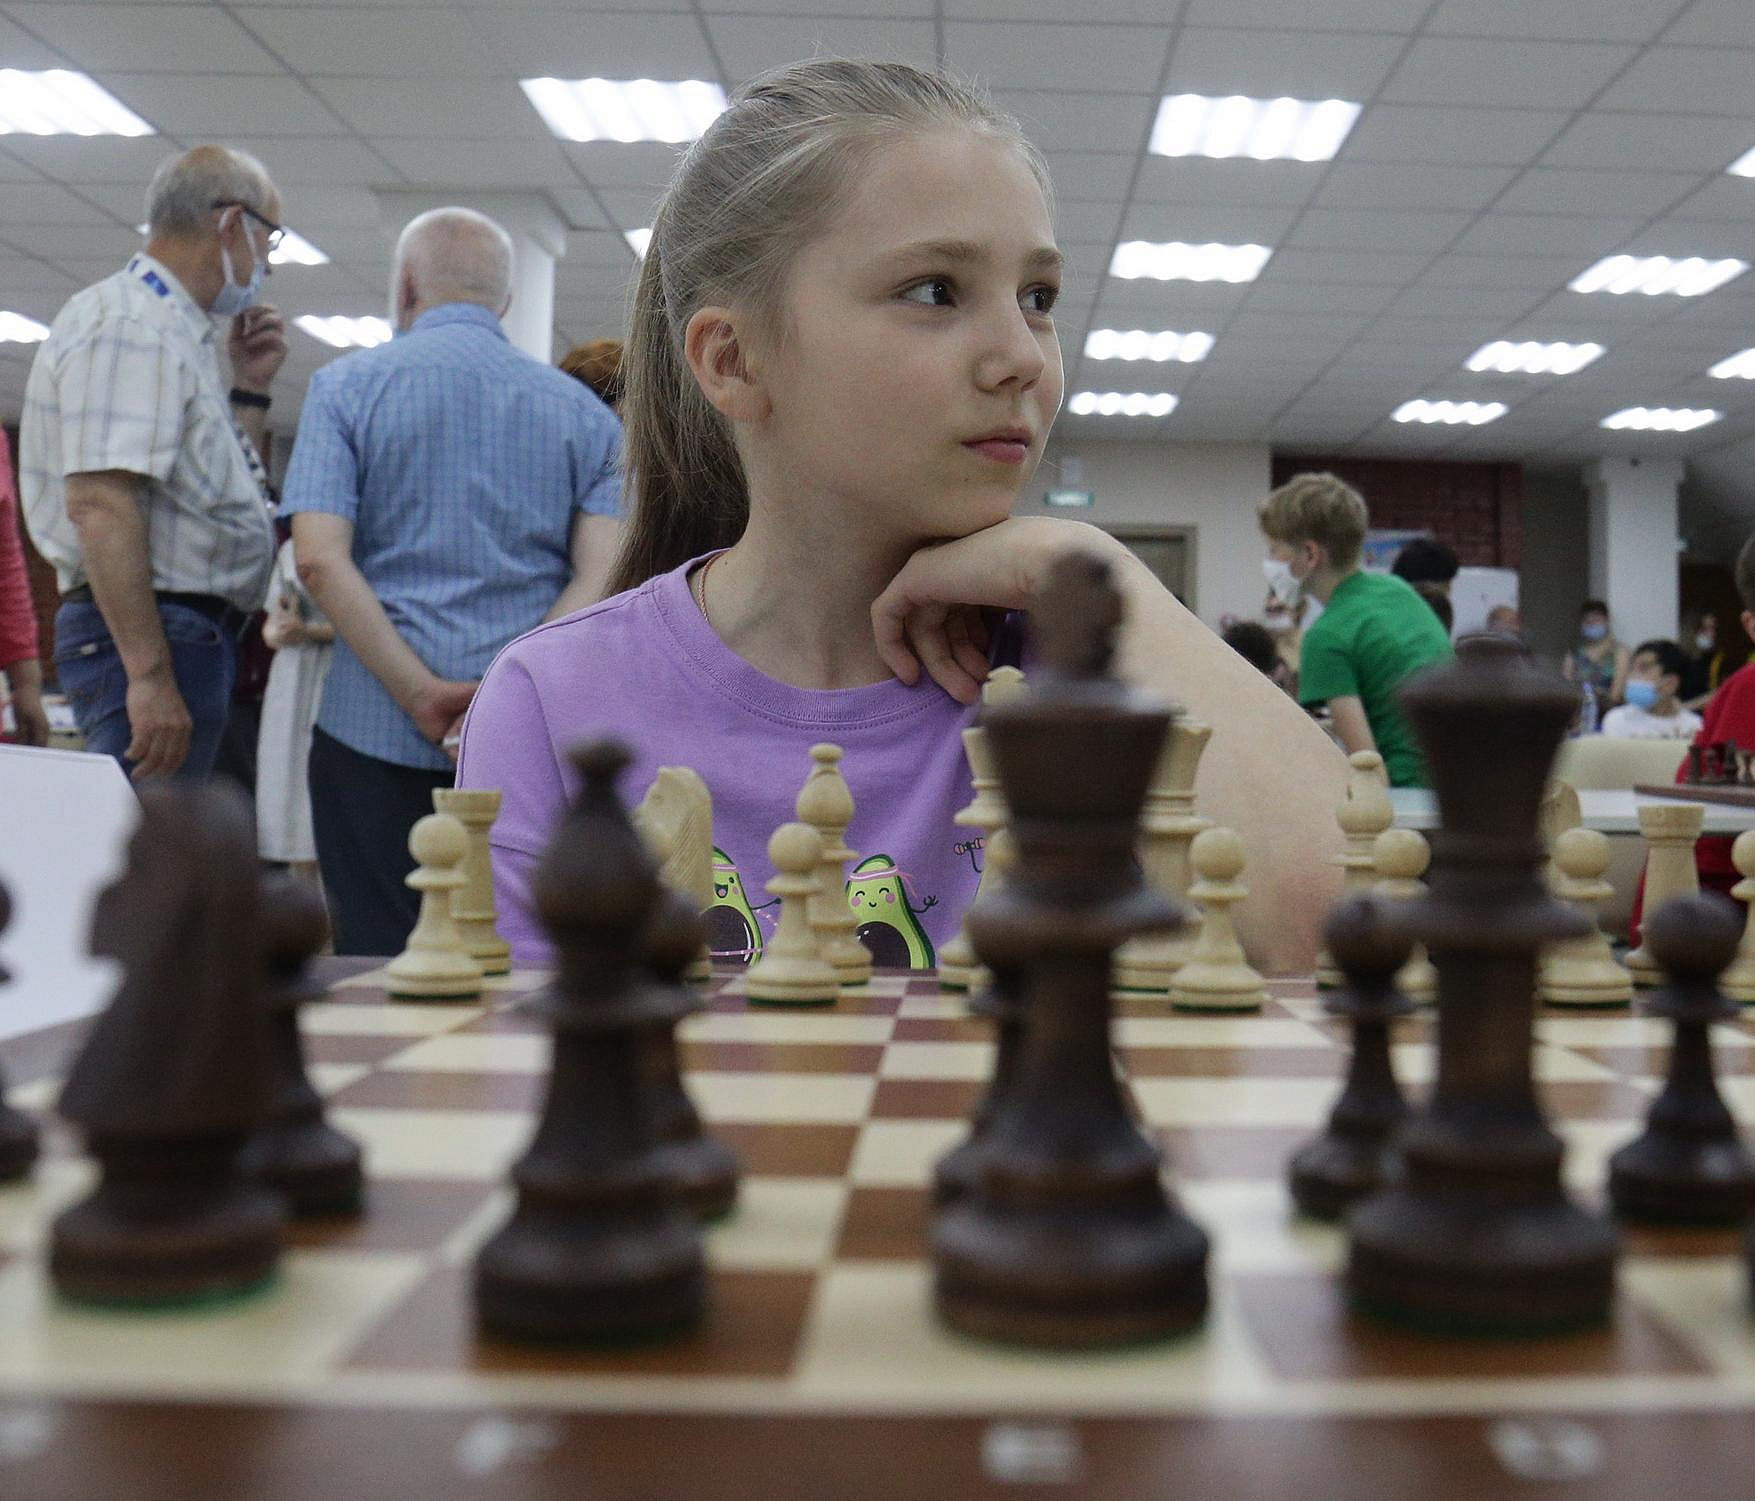 Городской шахматный центр попросили у мэра Локтя гроссмейстеры